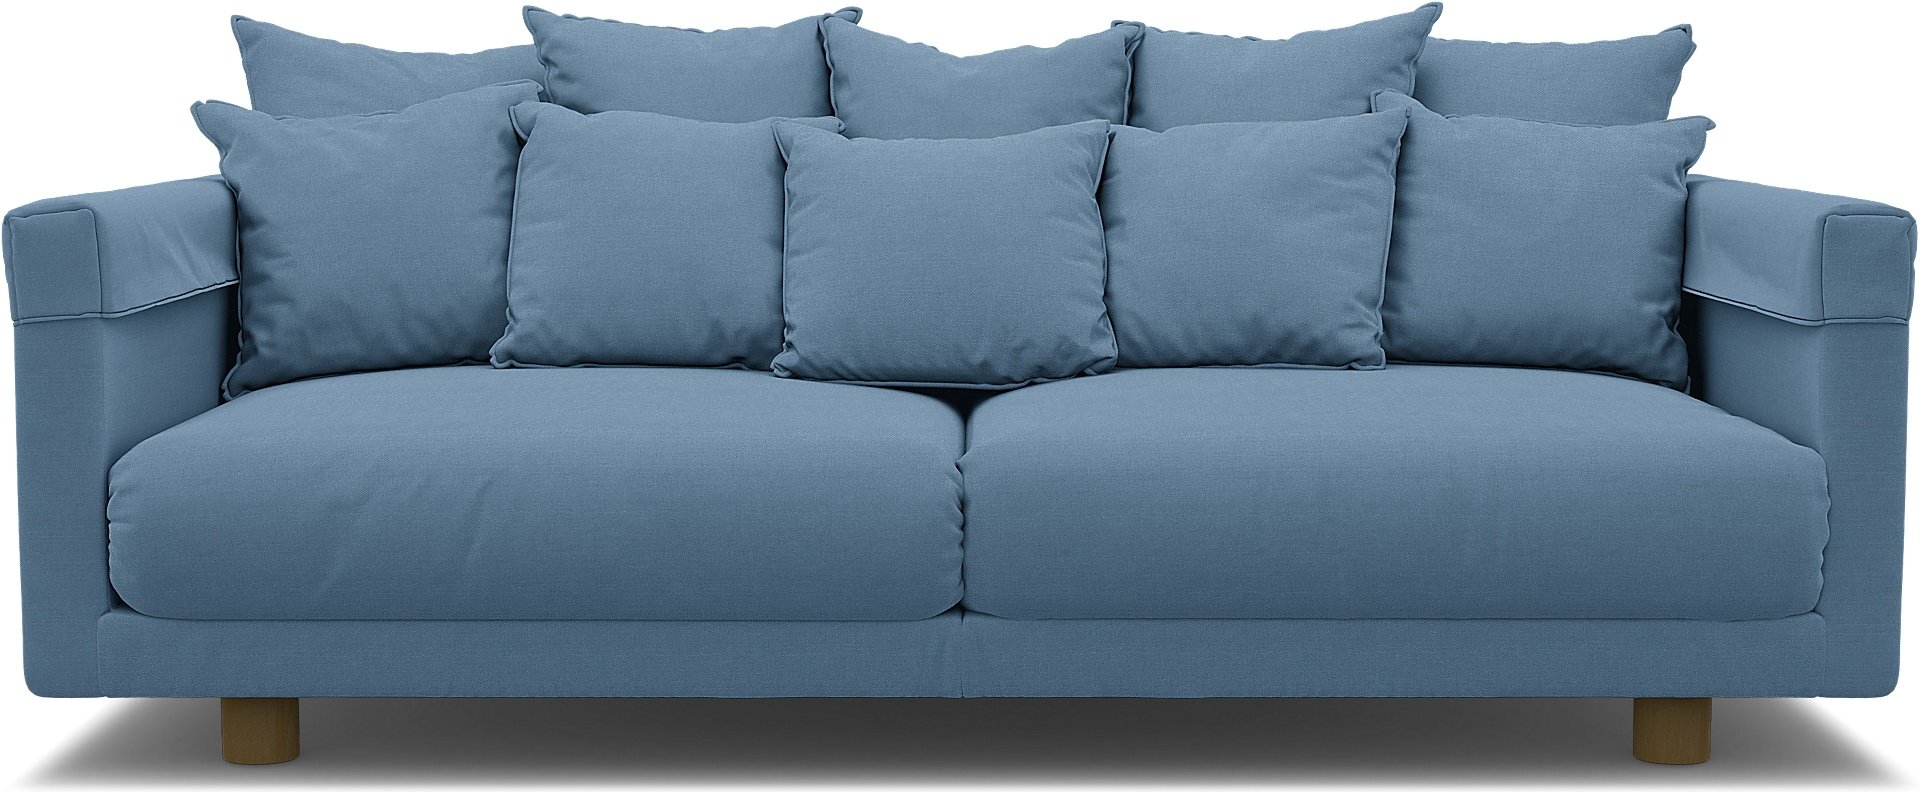 IKEA - Stockholm 2017 3 Seater Sofa Cover, Vintage Blue, Linen - Bemz